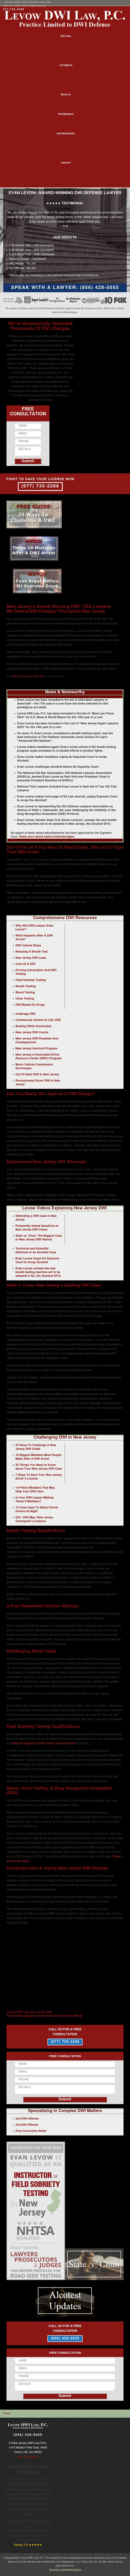 Levow DWI Law - Cherry Hill NJ Lawyers